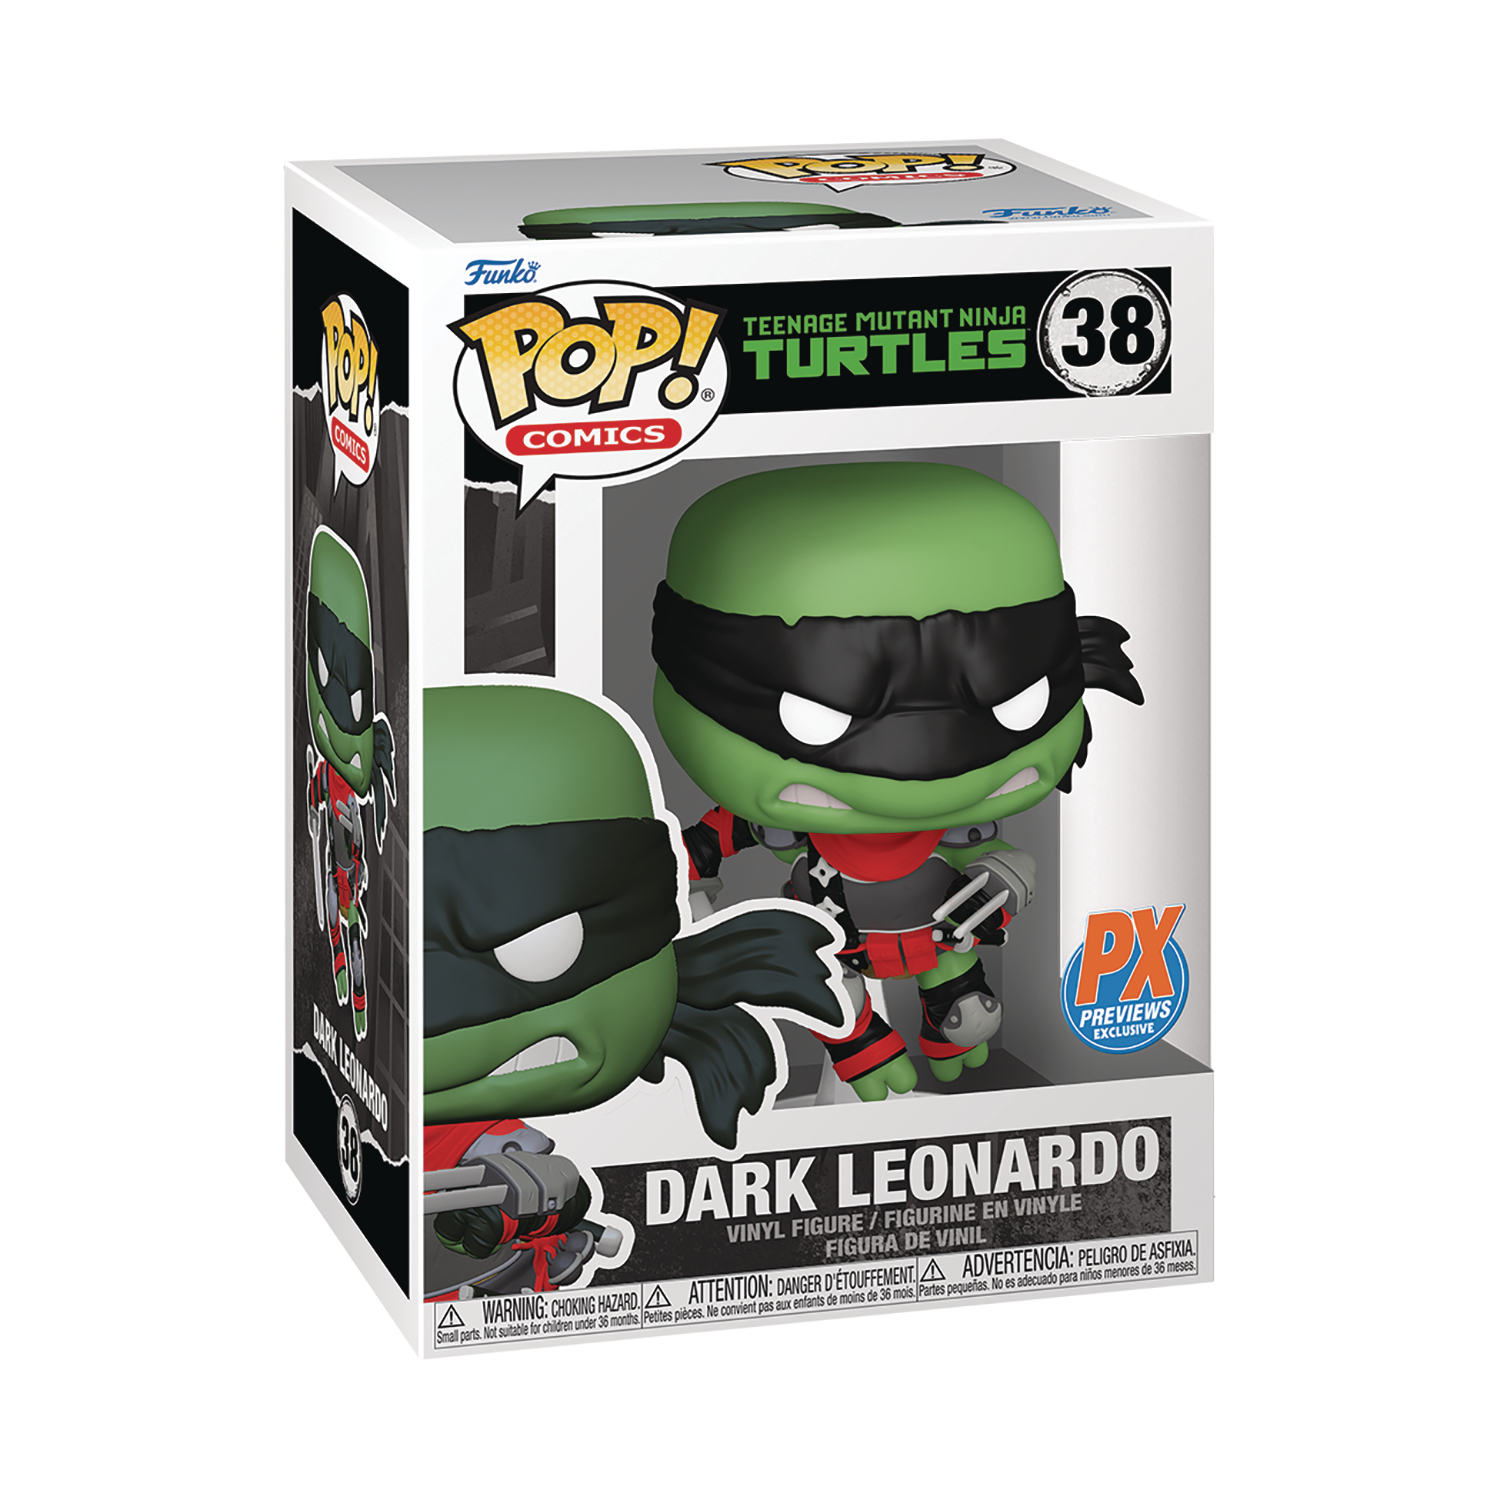 Pop Comics Teenage Mutant Ninja Turtles Dark Leonardo Px Vinyl Figure